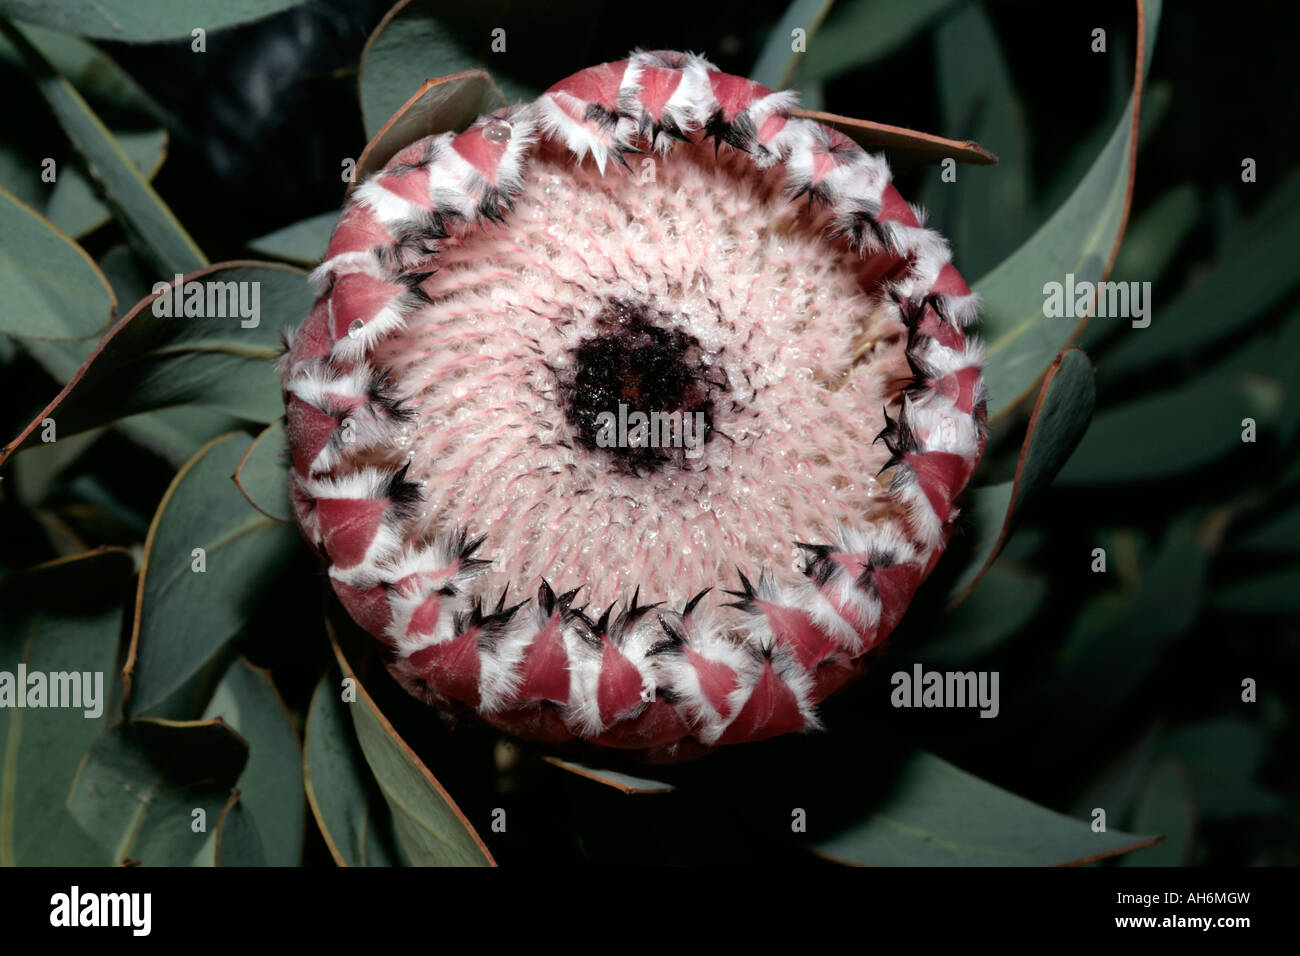 Oleander-leaved Protea/Sugarbush- Protea neriifolia -Family Proteaceae Stock Photo